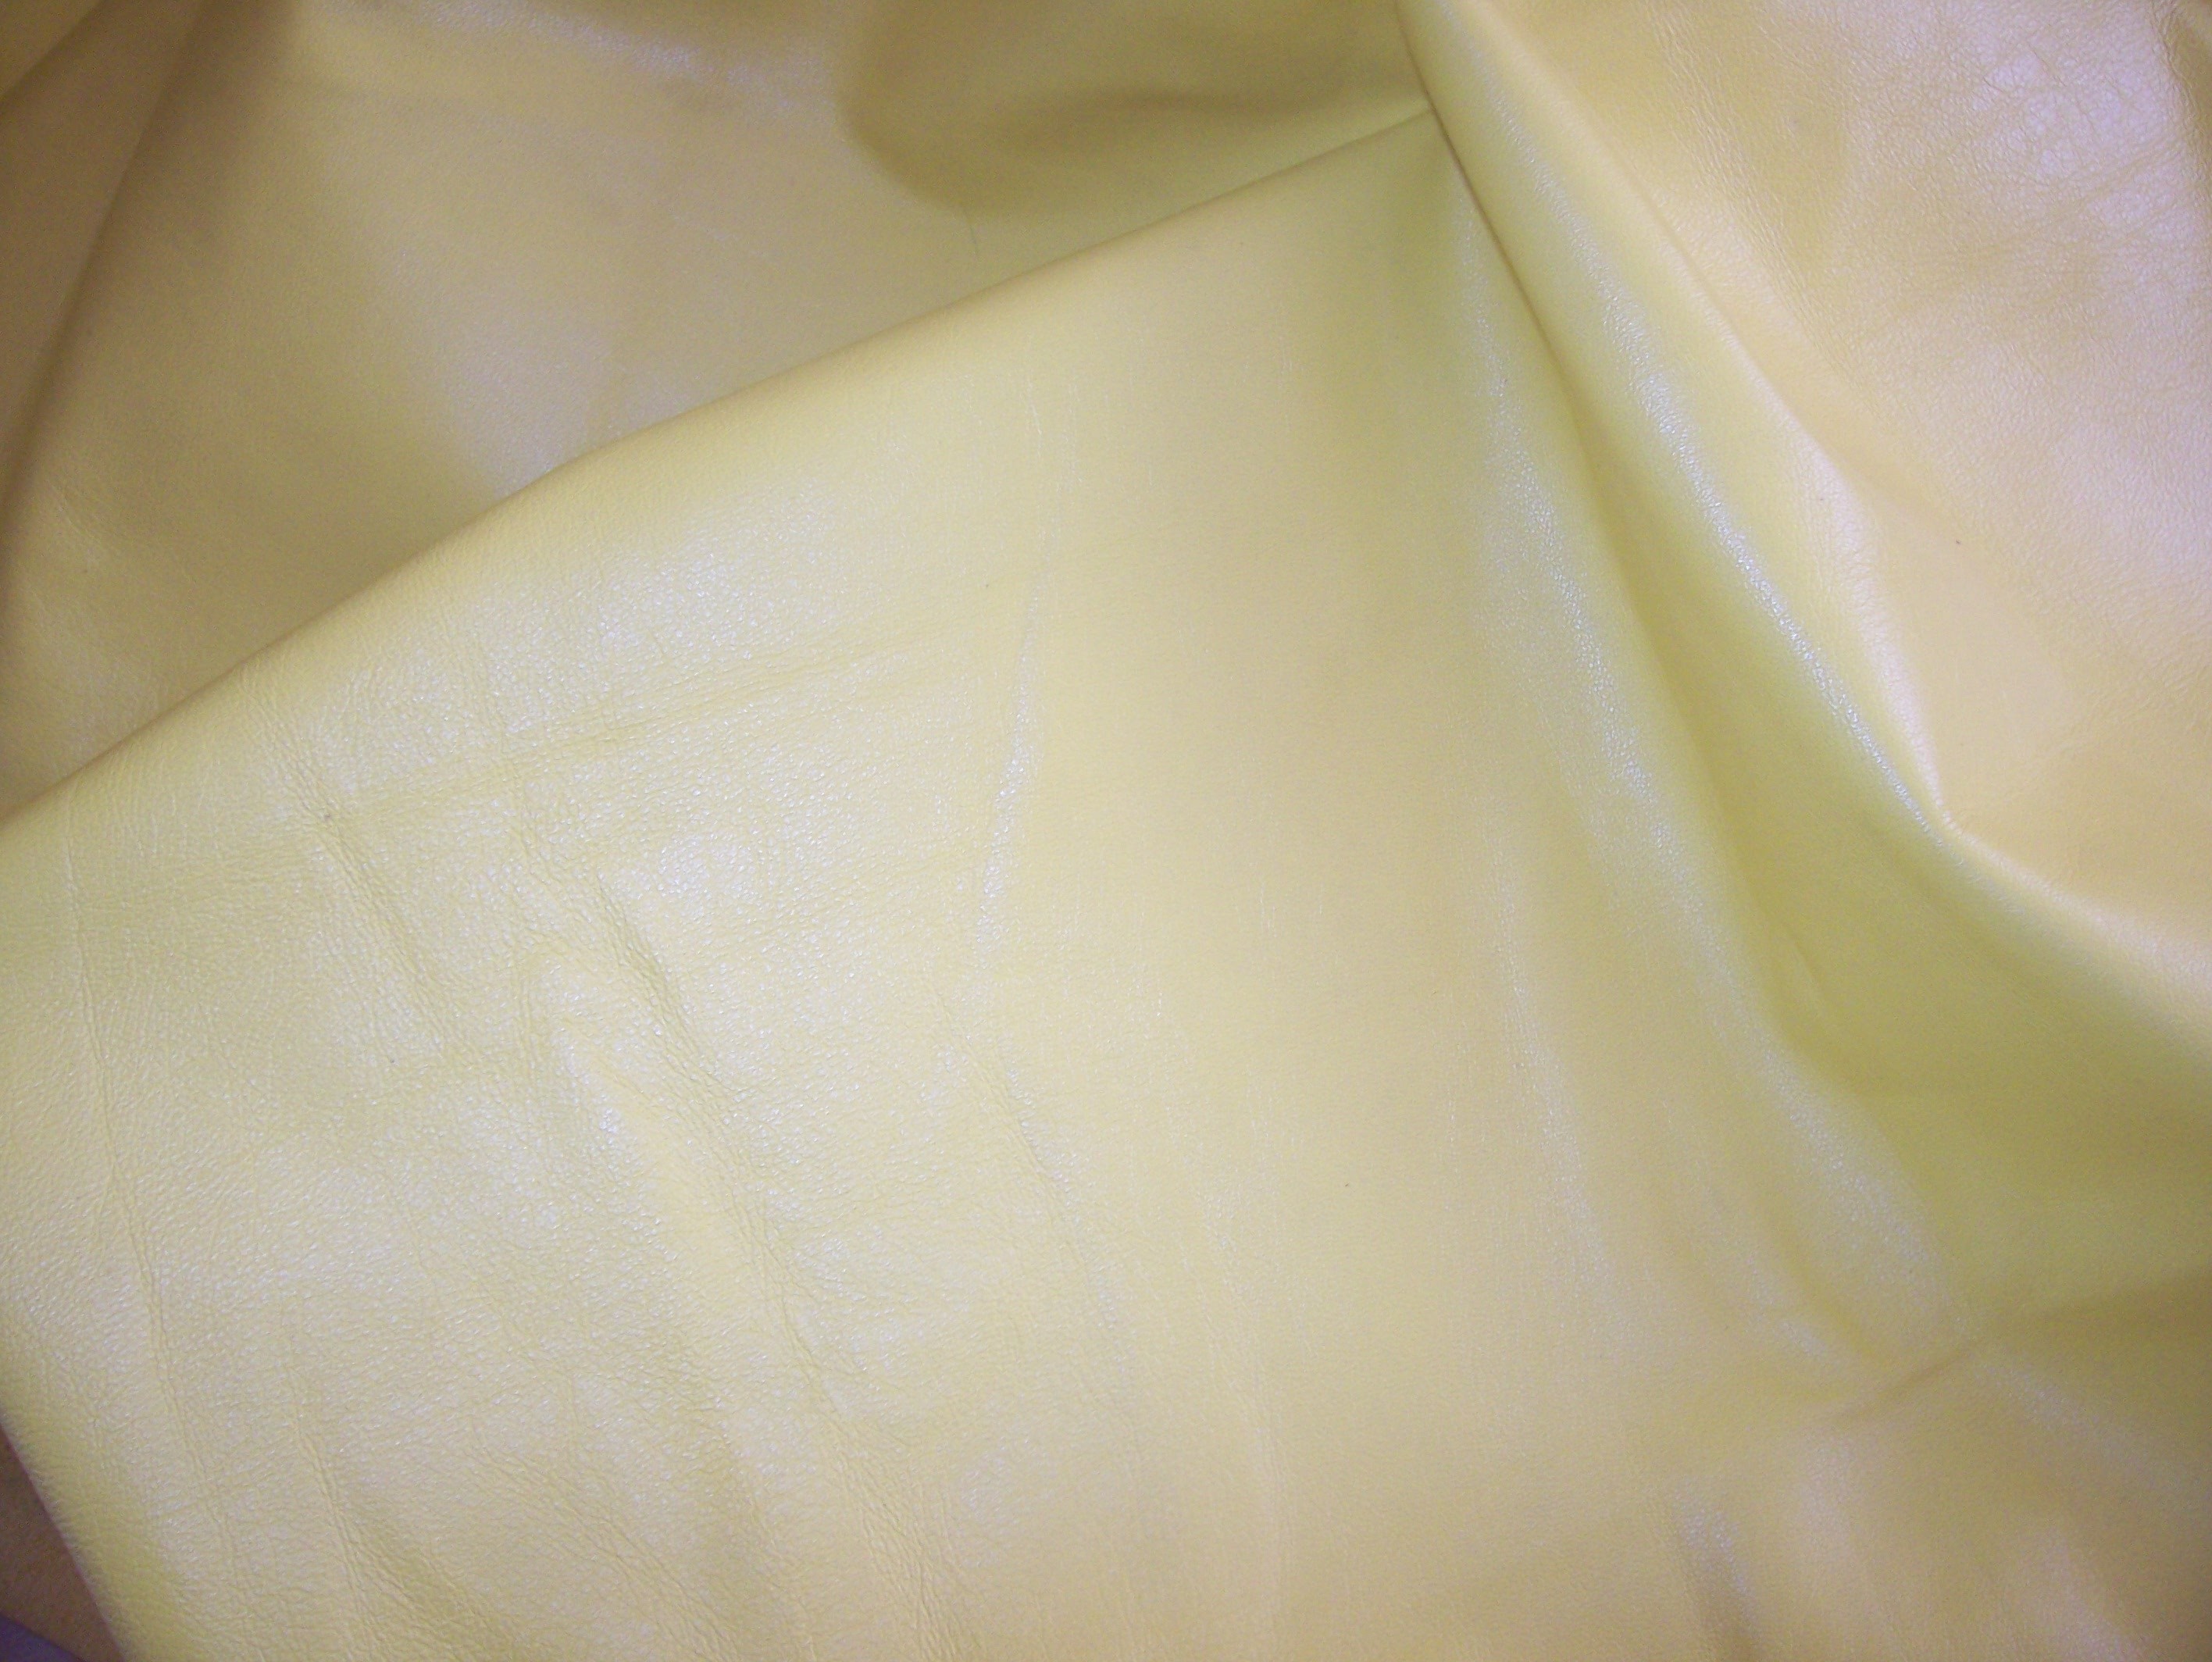 Ekskluzywna skóra naturalna żółta sprzedaż -  żakiet ze skóry naturalnej żółty, Żółta sukienka ze skóry naturalnej.Spodnica ze skóry naturalnej żółta pastelowa -  Żólta sukienka ze skóry naturalnej , Skora naturalna żółta cienka_ skóra naturalna odziezowa